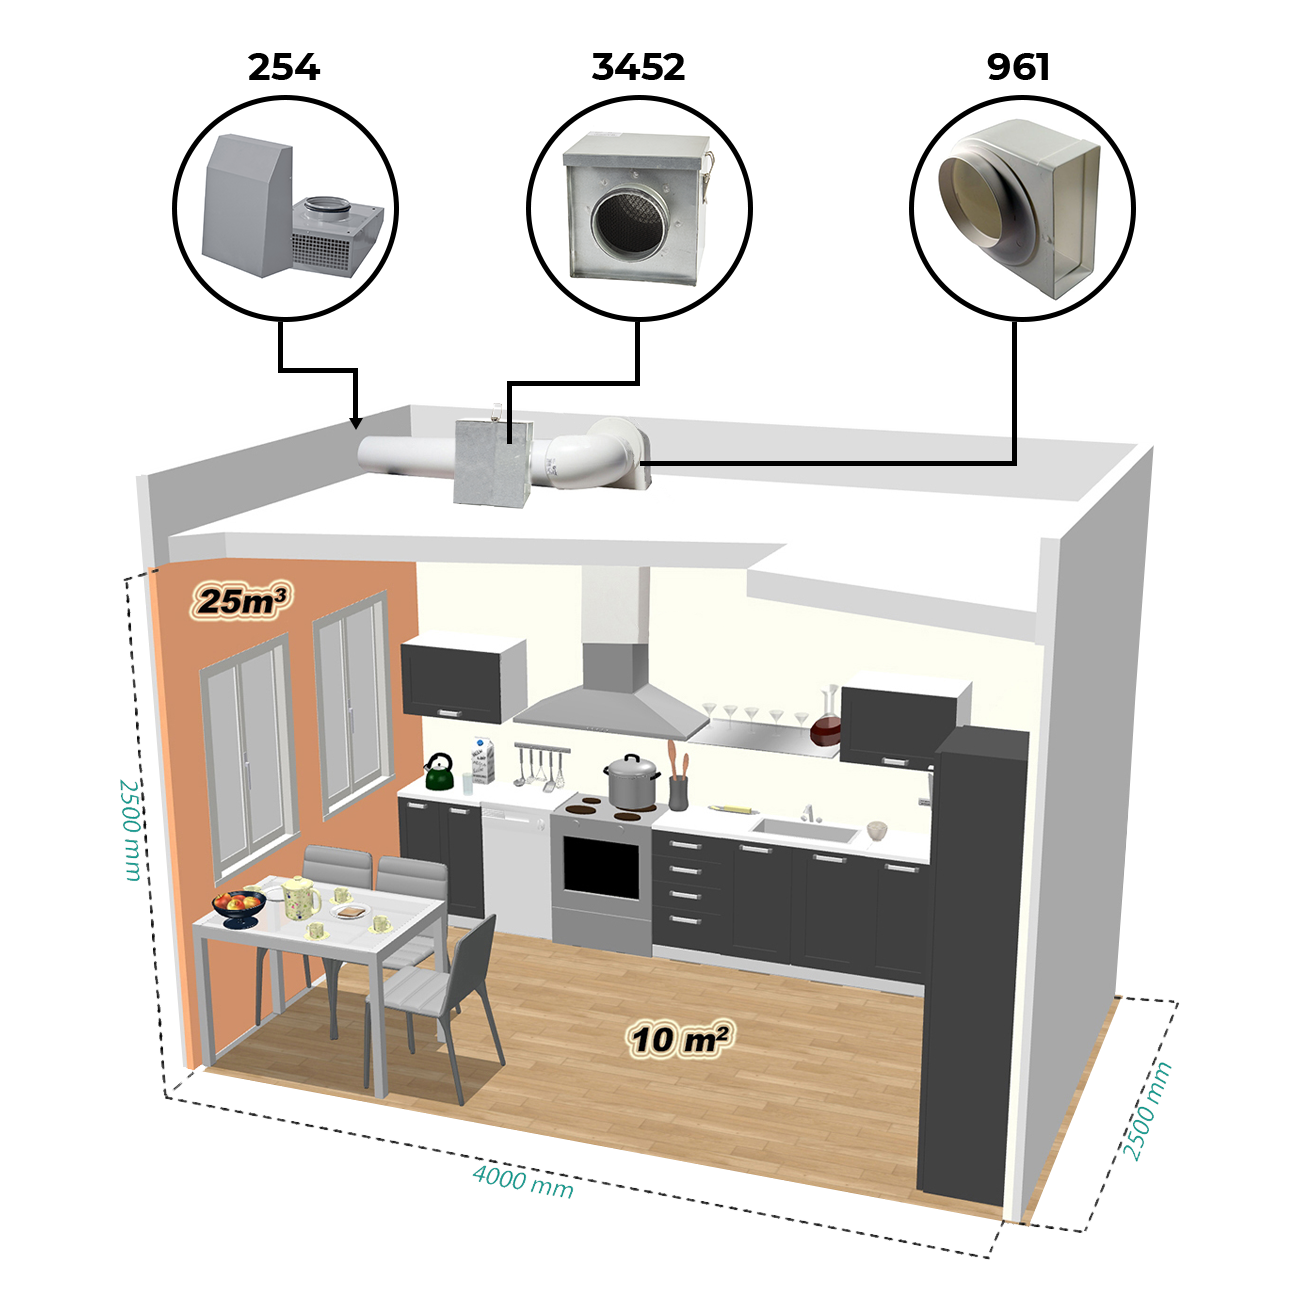 Příklad instalace vzduchotechniky v kuchyni pomocí radiálního průmyslového ventilátoru Dalap VIT